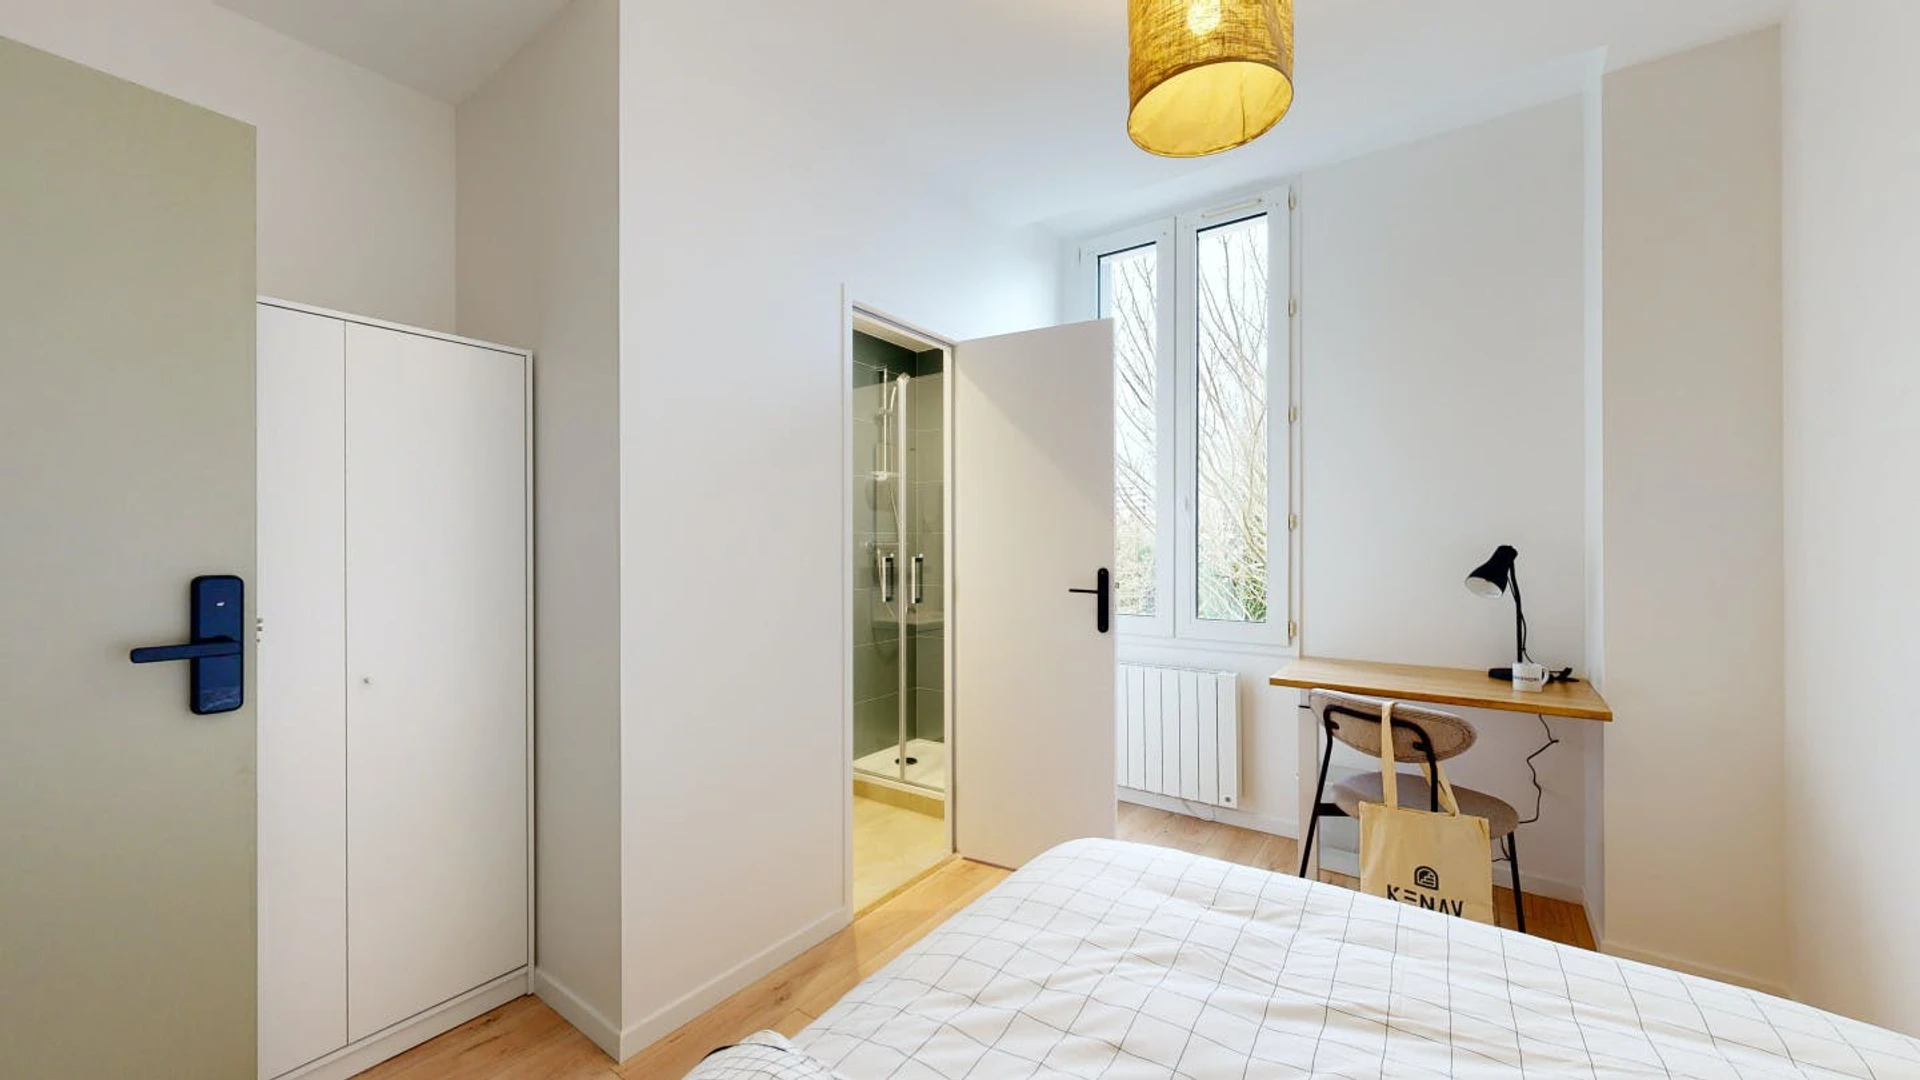 Rennes de çift kişilik yataklı kiralık oda